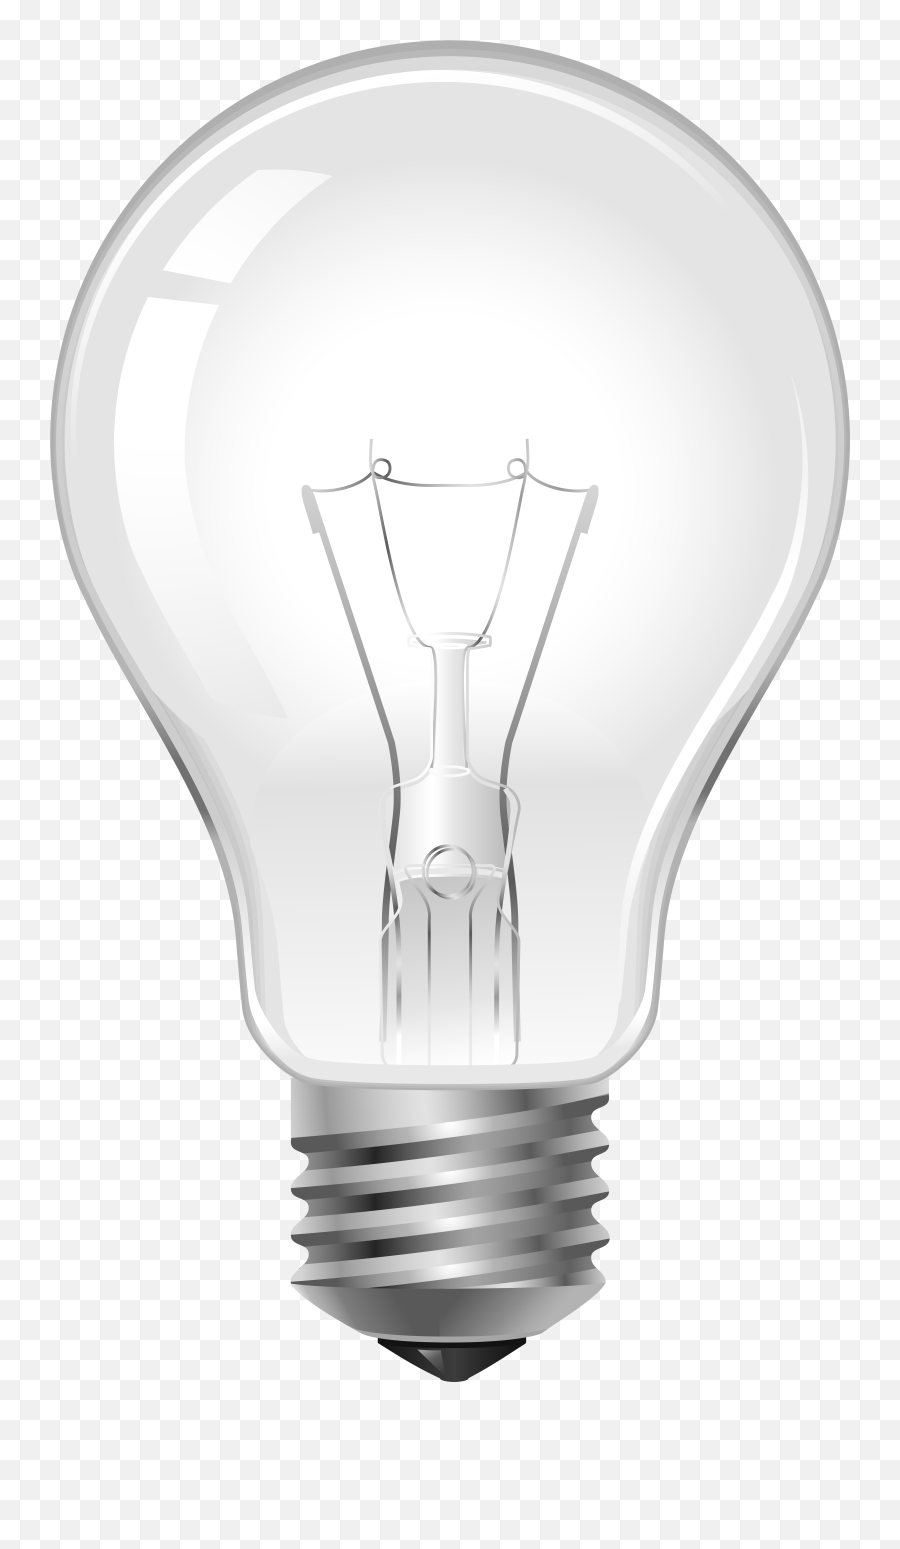 Download Free Png Light - Bulb Dlpngcom Broken Bulb Emoji,Lighbulb Emoji